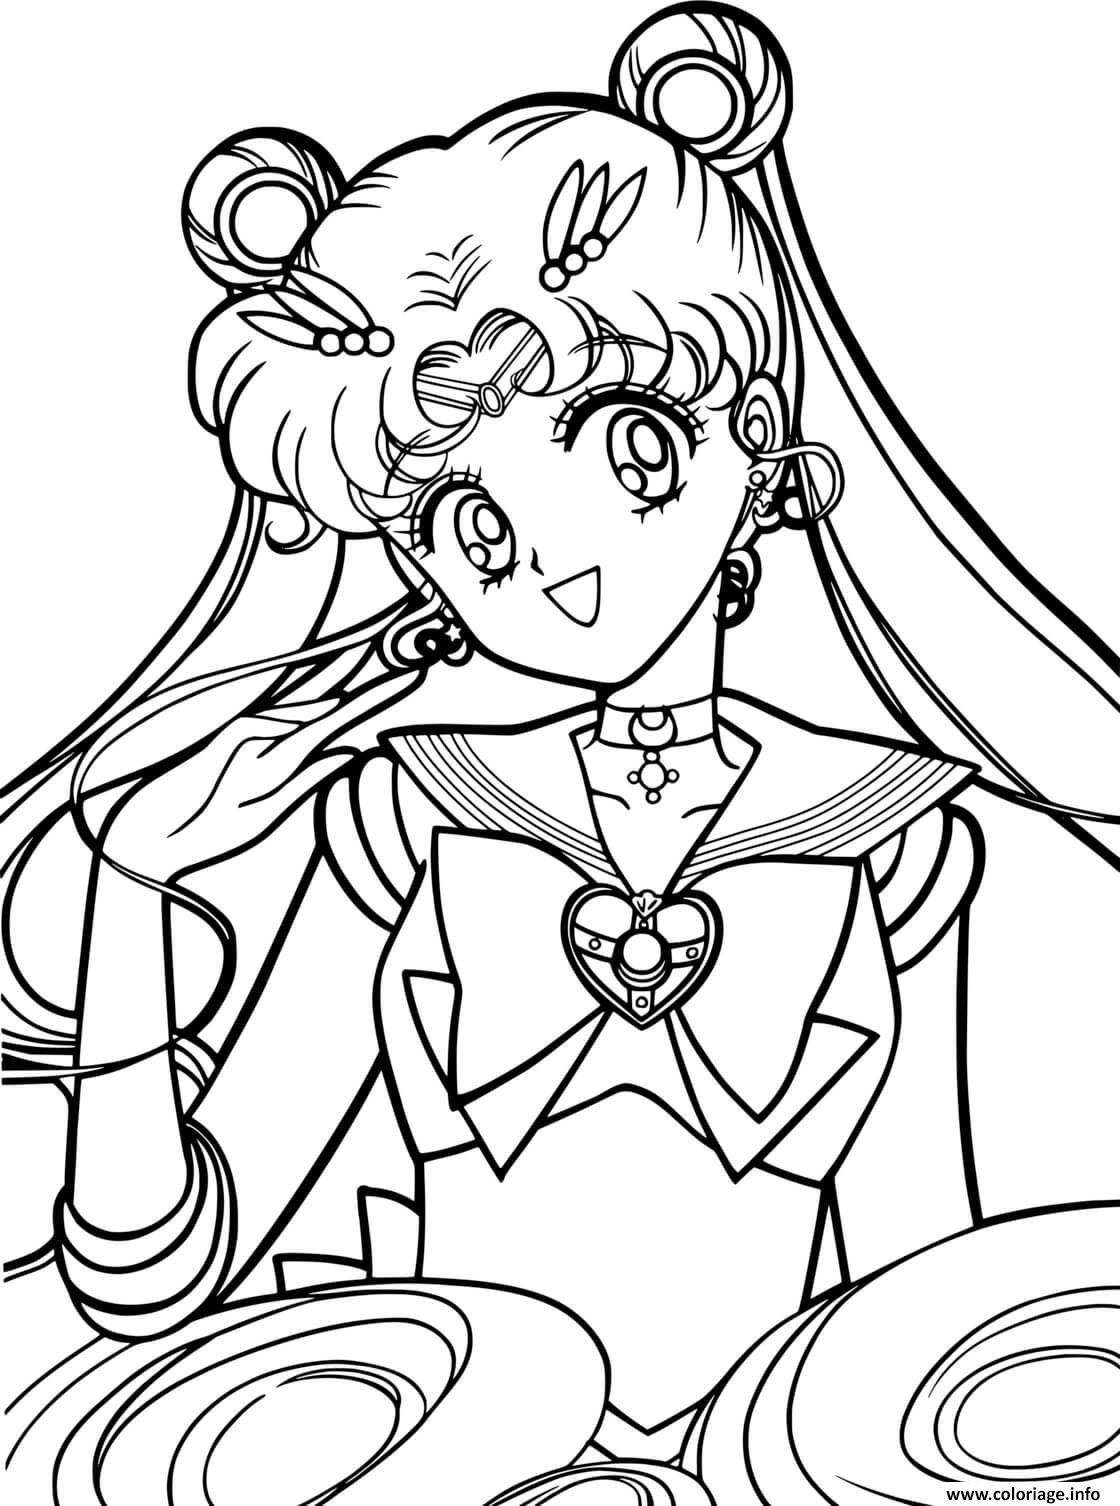 Dessin Sailor Moon Coloriage Gratuit à Imprimer